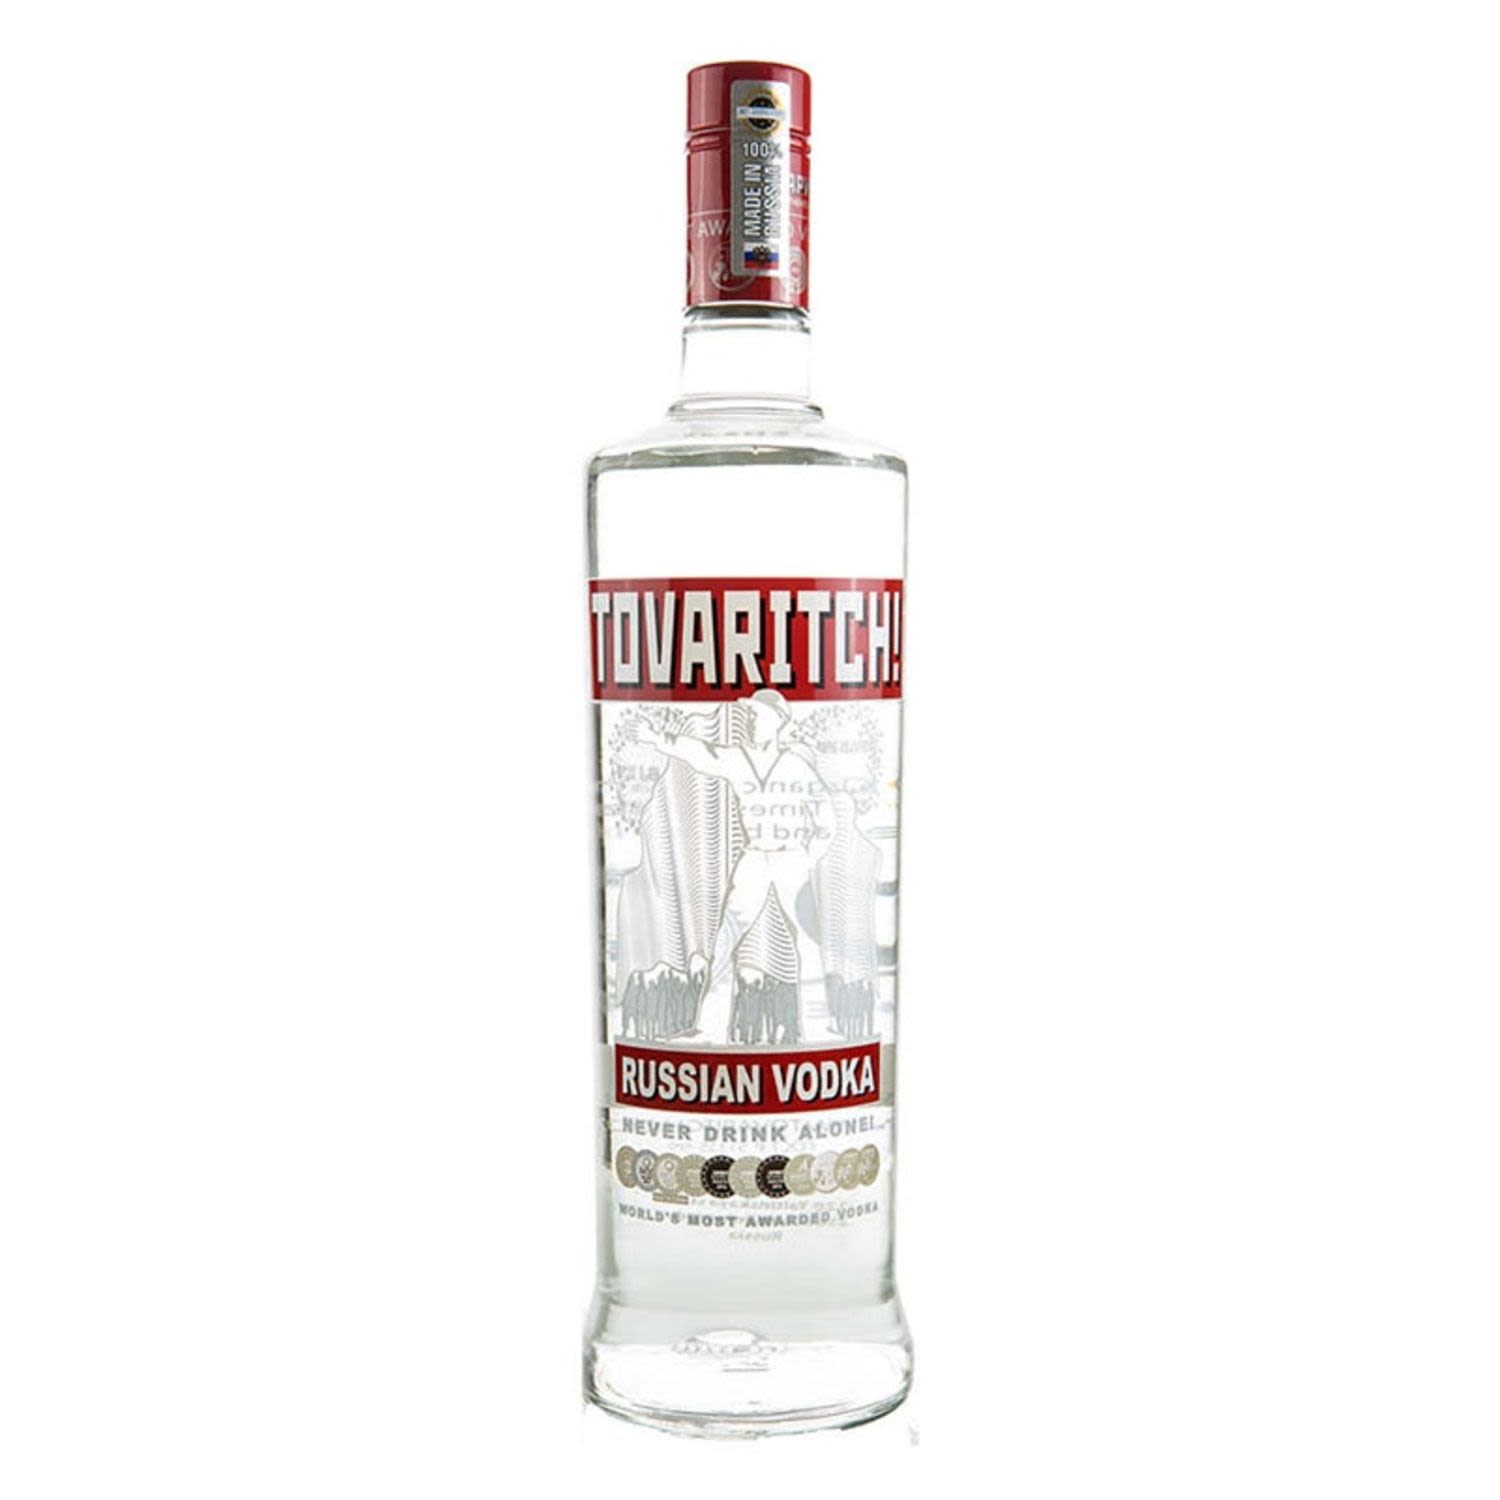 TOVARITCH! Premium Russian Vodka 700mL Bottle